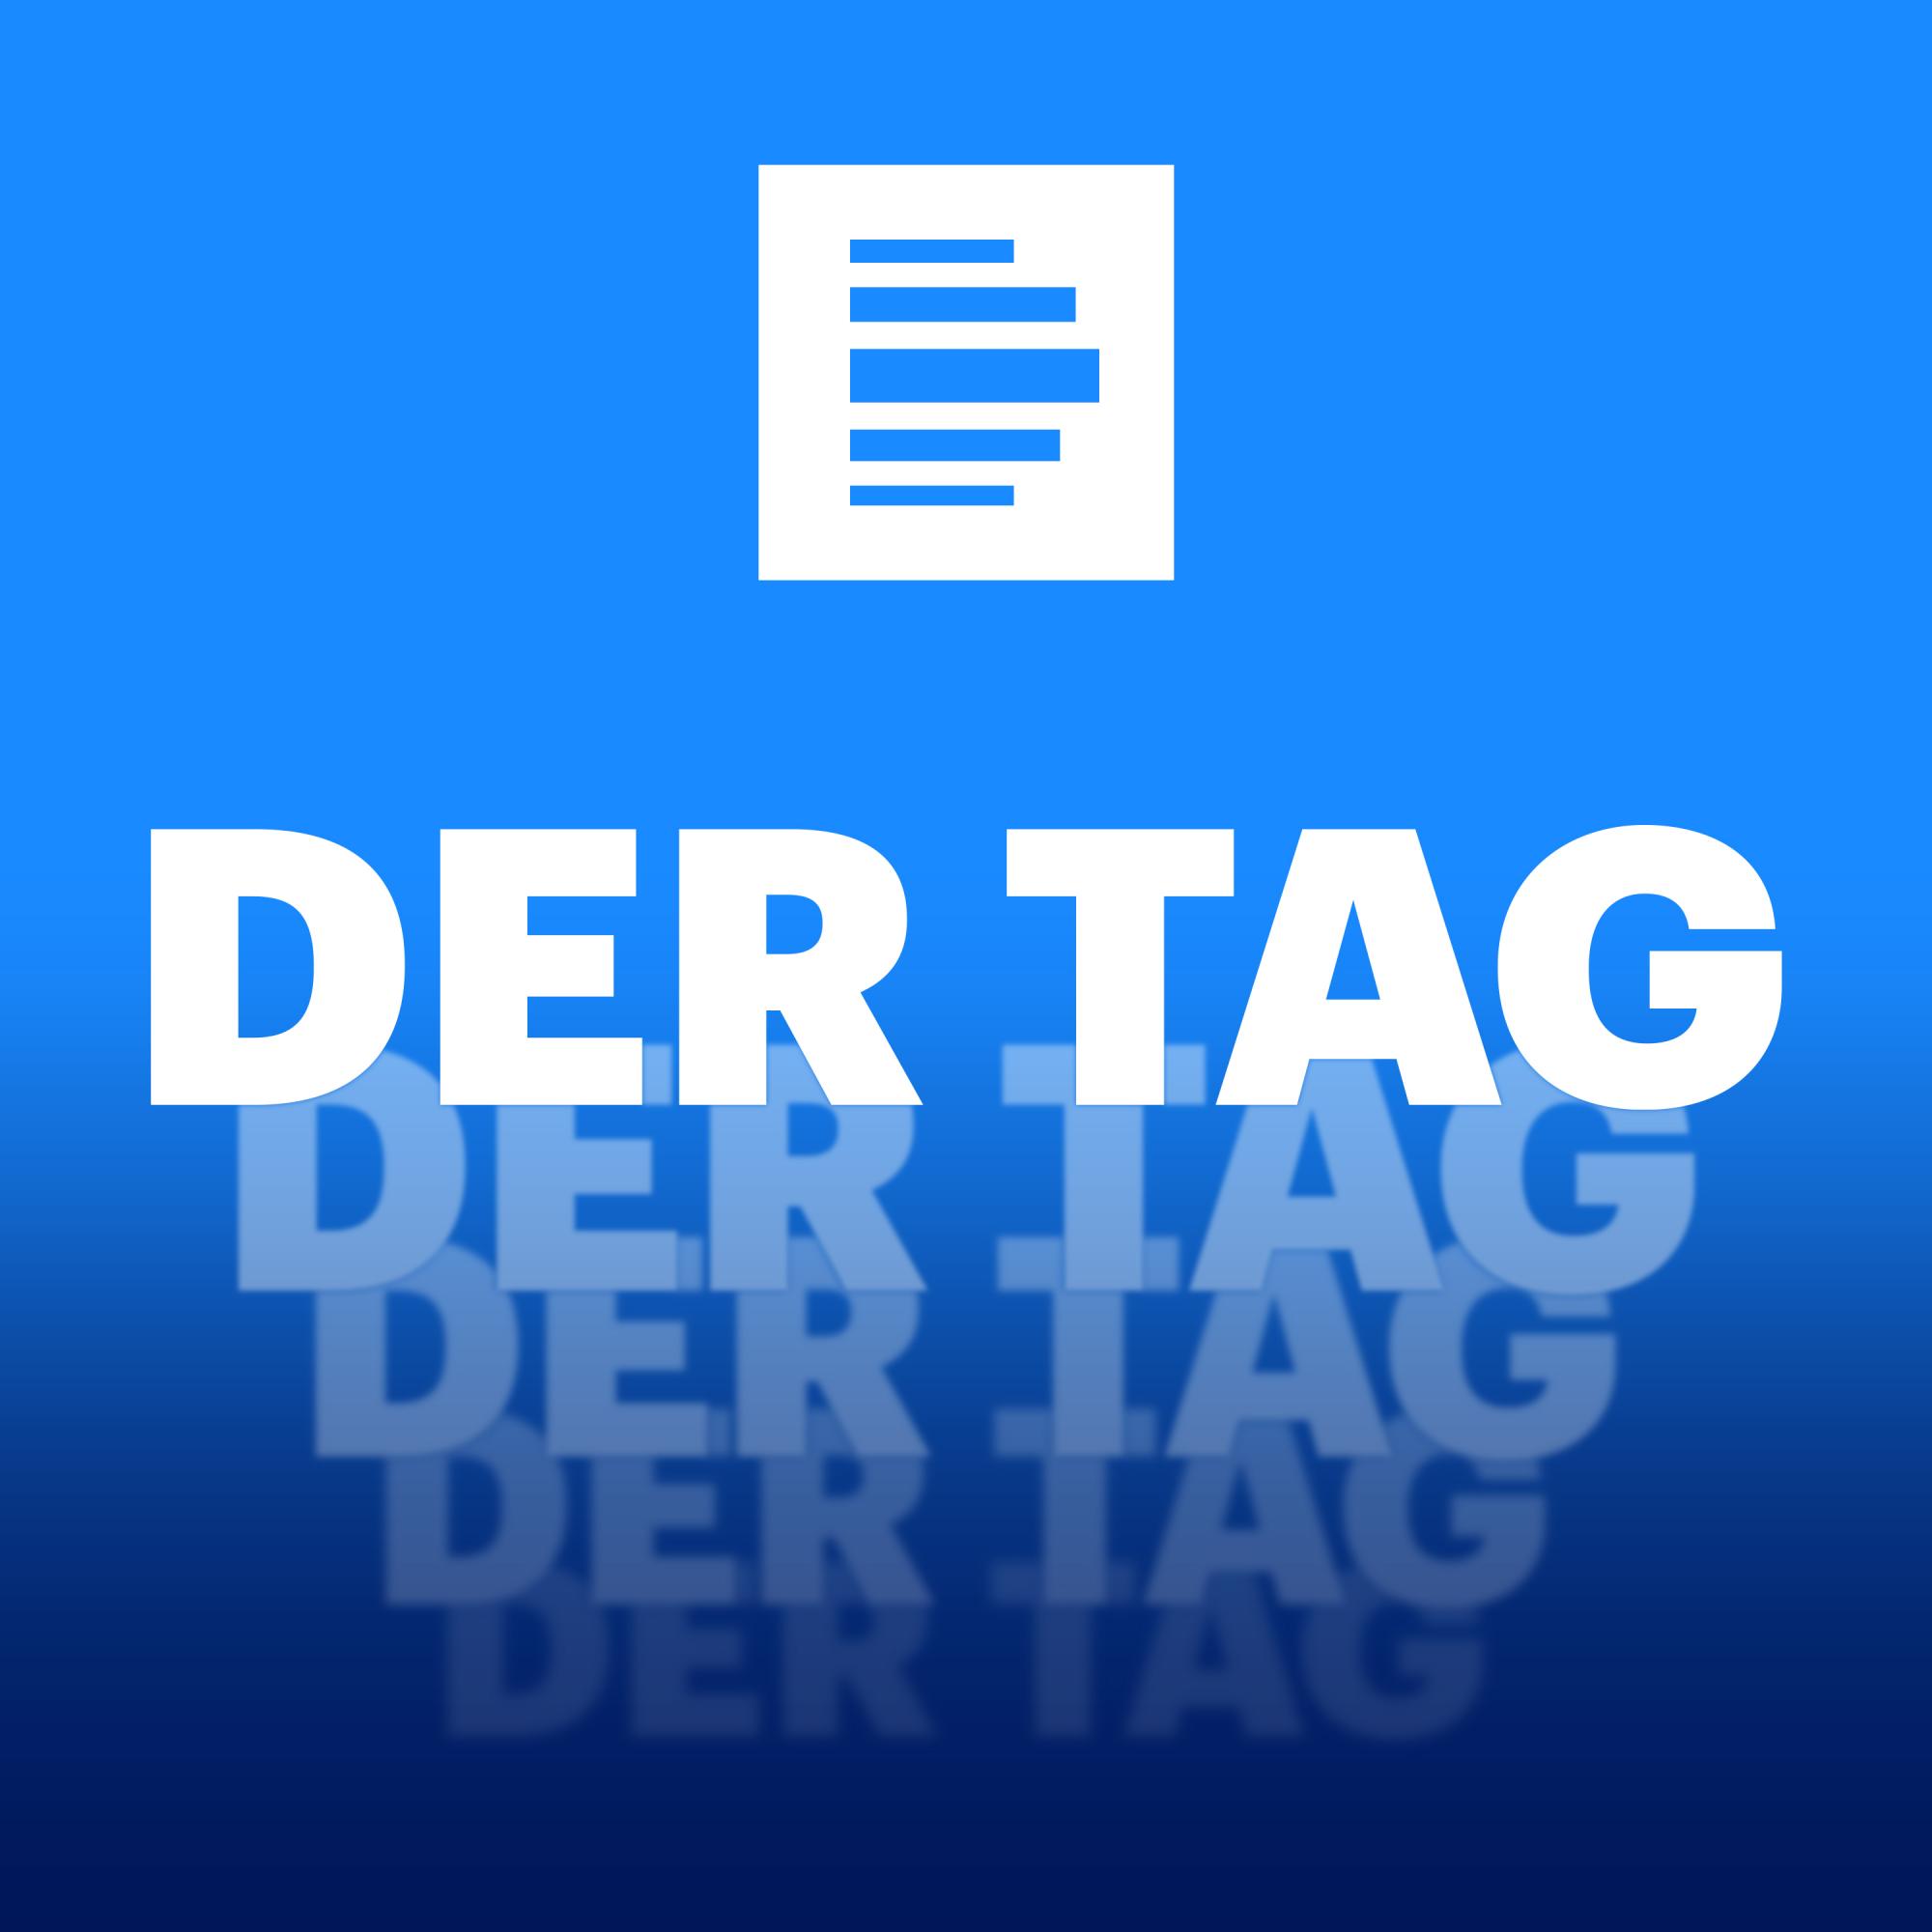 Das Podcastlogo von "Deutschlandfunk - Der Tag" zeigt den Schriftzug "Der Tag" in großen weißen Lettern vor blauem Hintergrund. Der Schriftzug wiederholt sich zwei Mal, immer kleiner im Hintergrund.